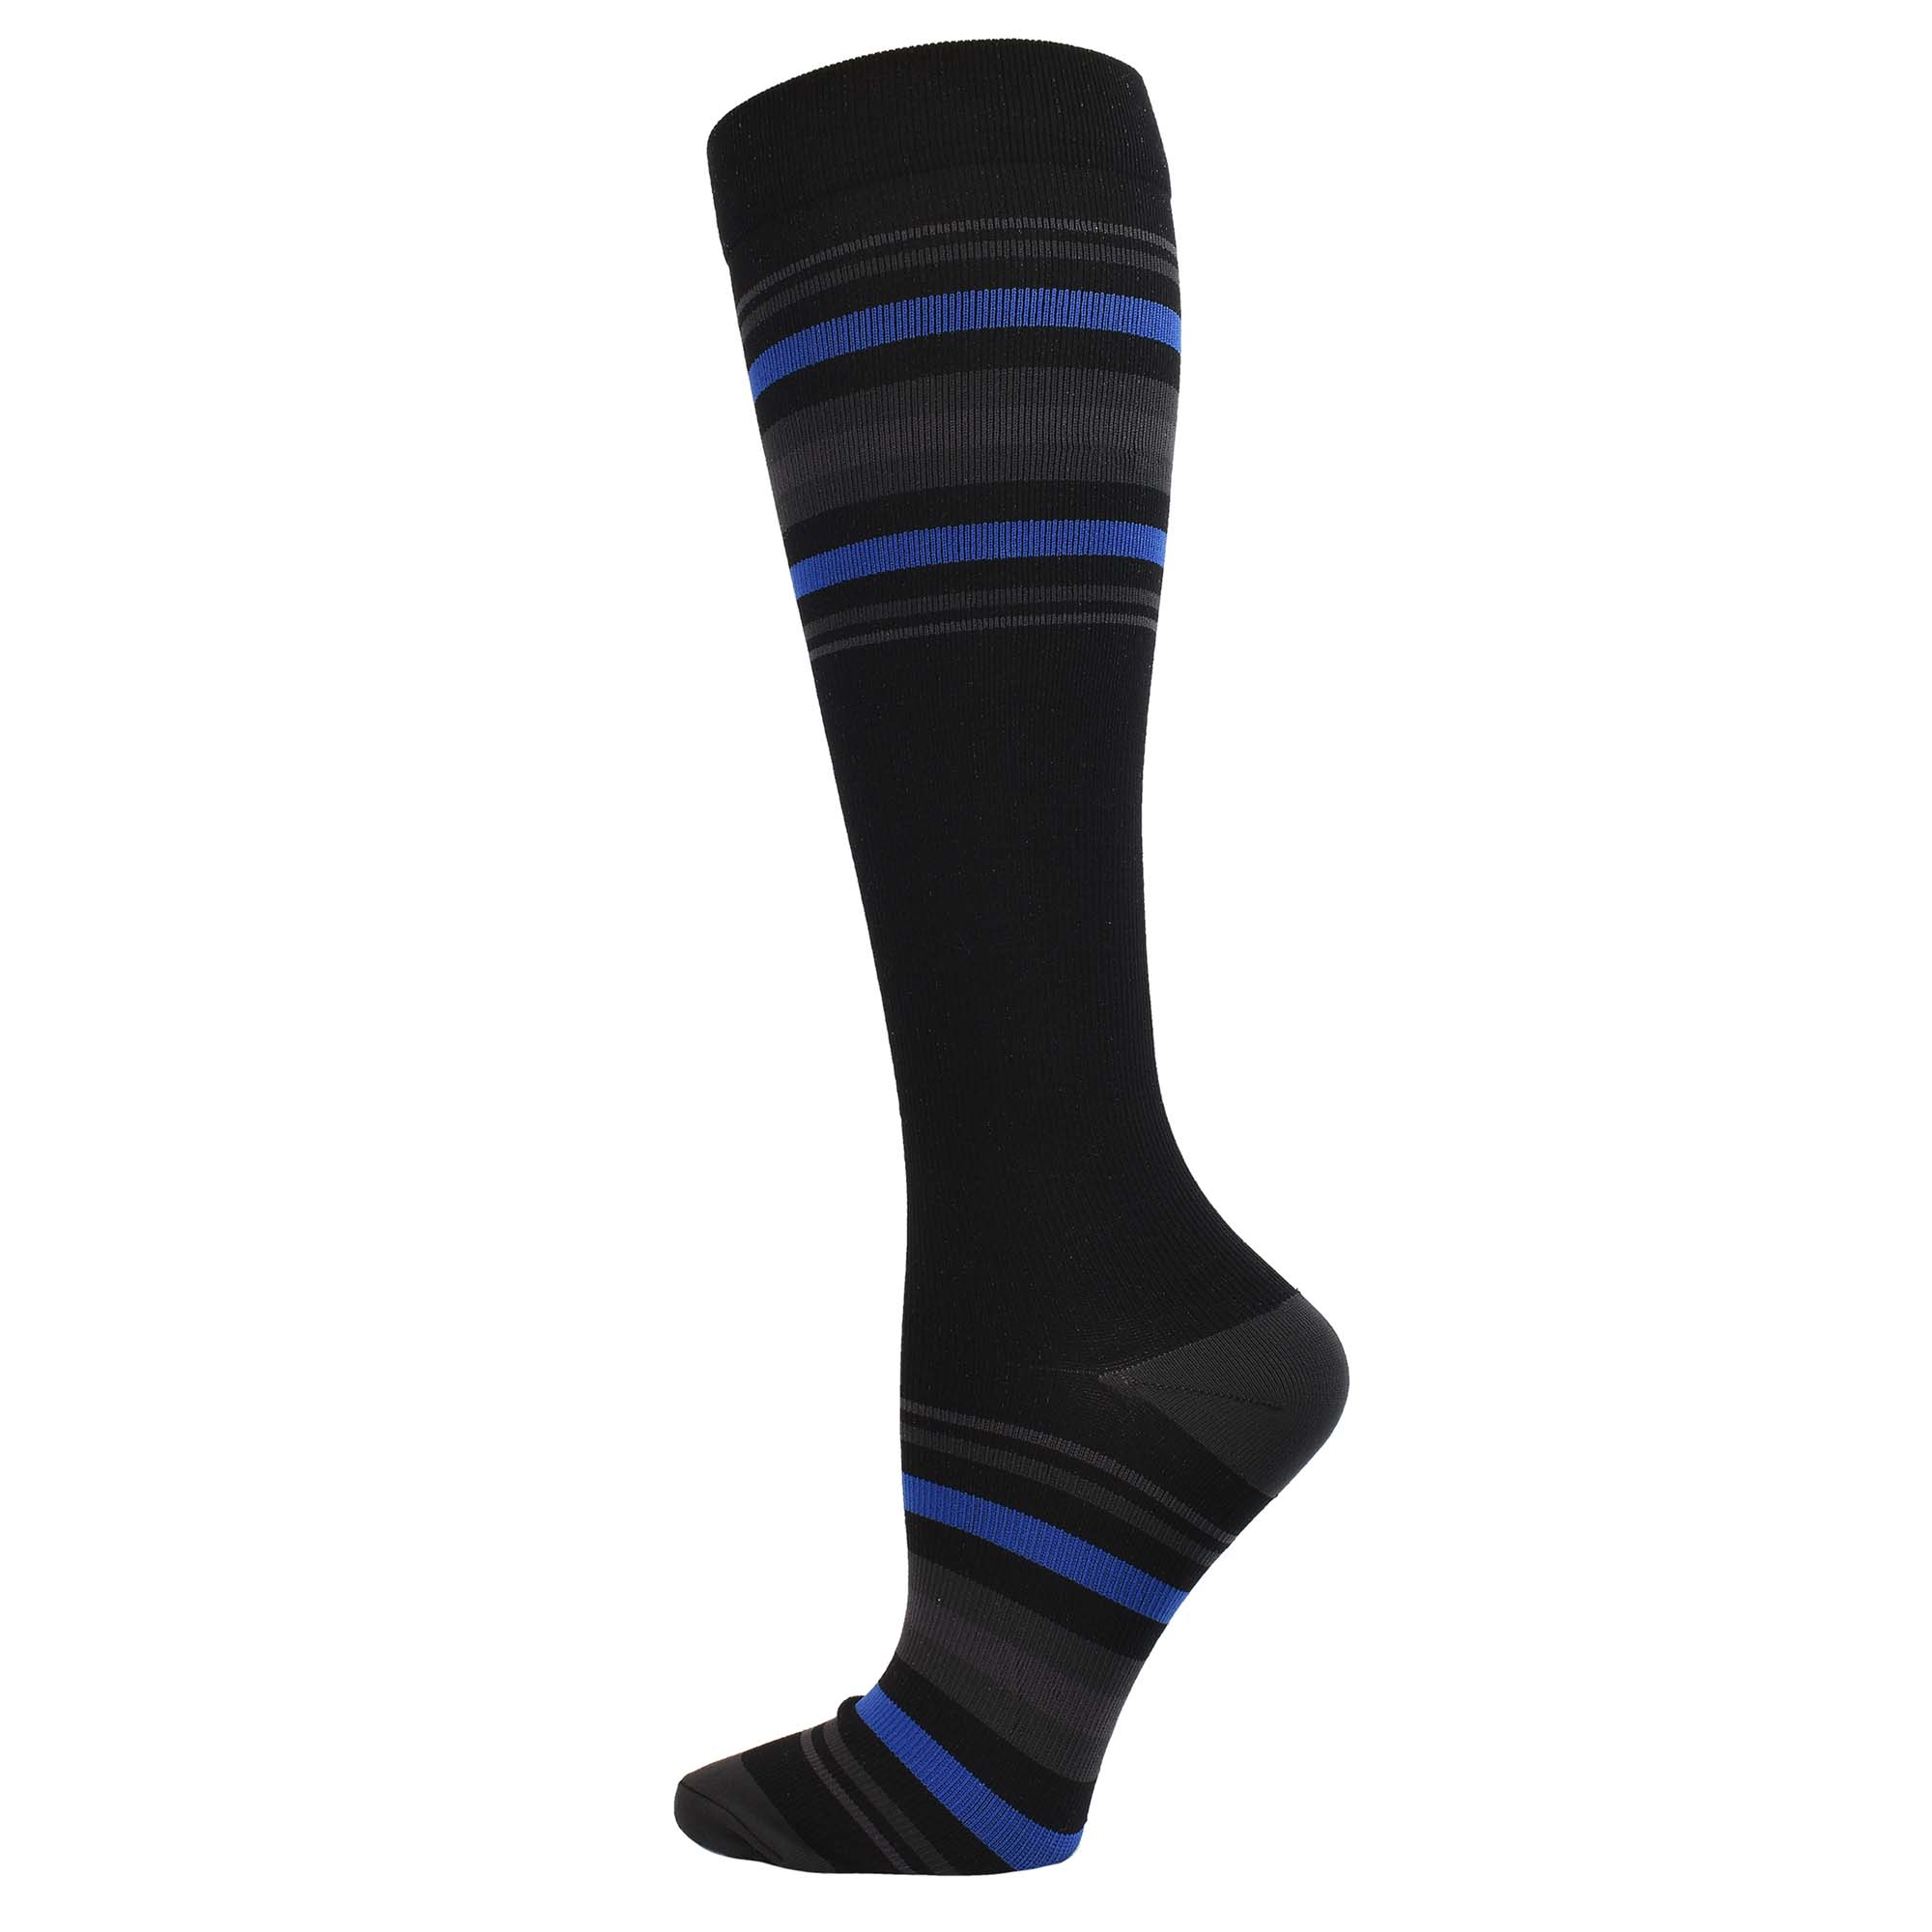 Men's Compression Socks 10-14mmHg : Mens Striped Premium ...